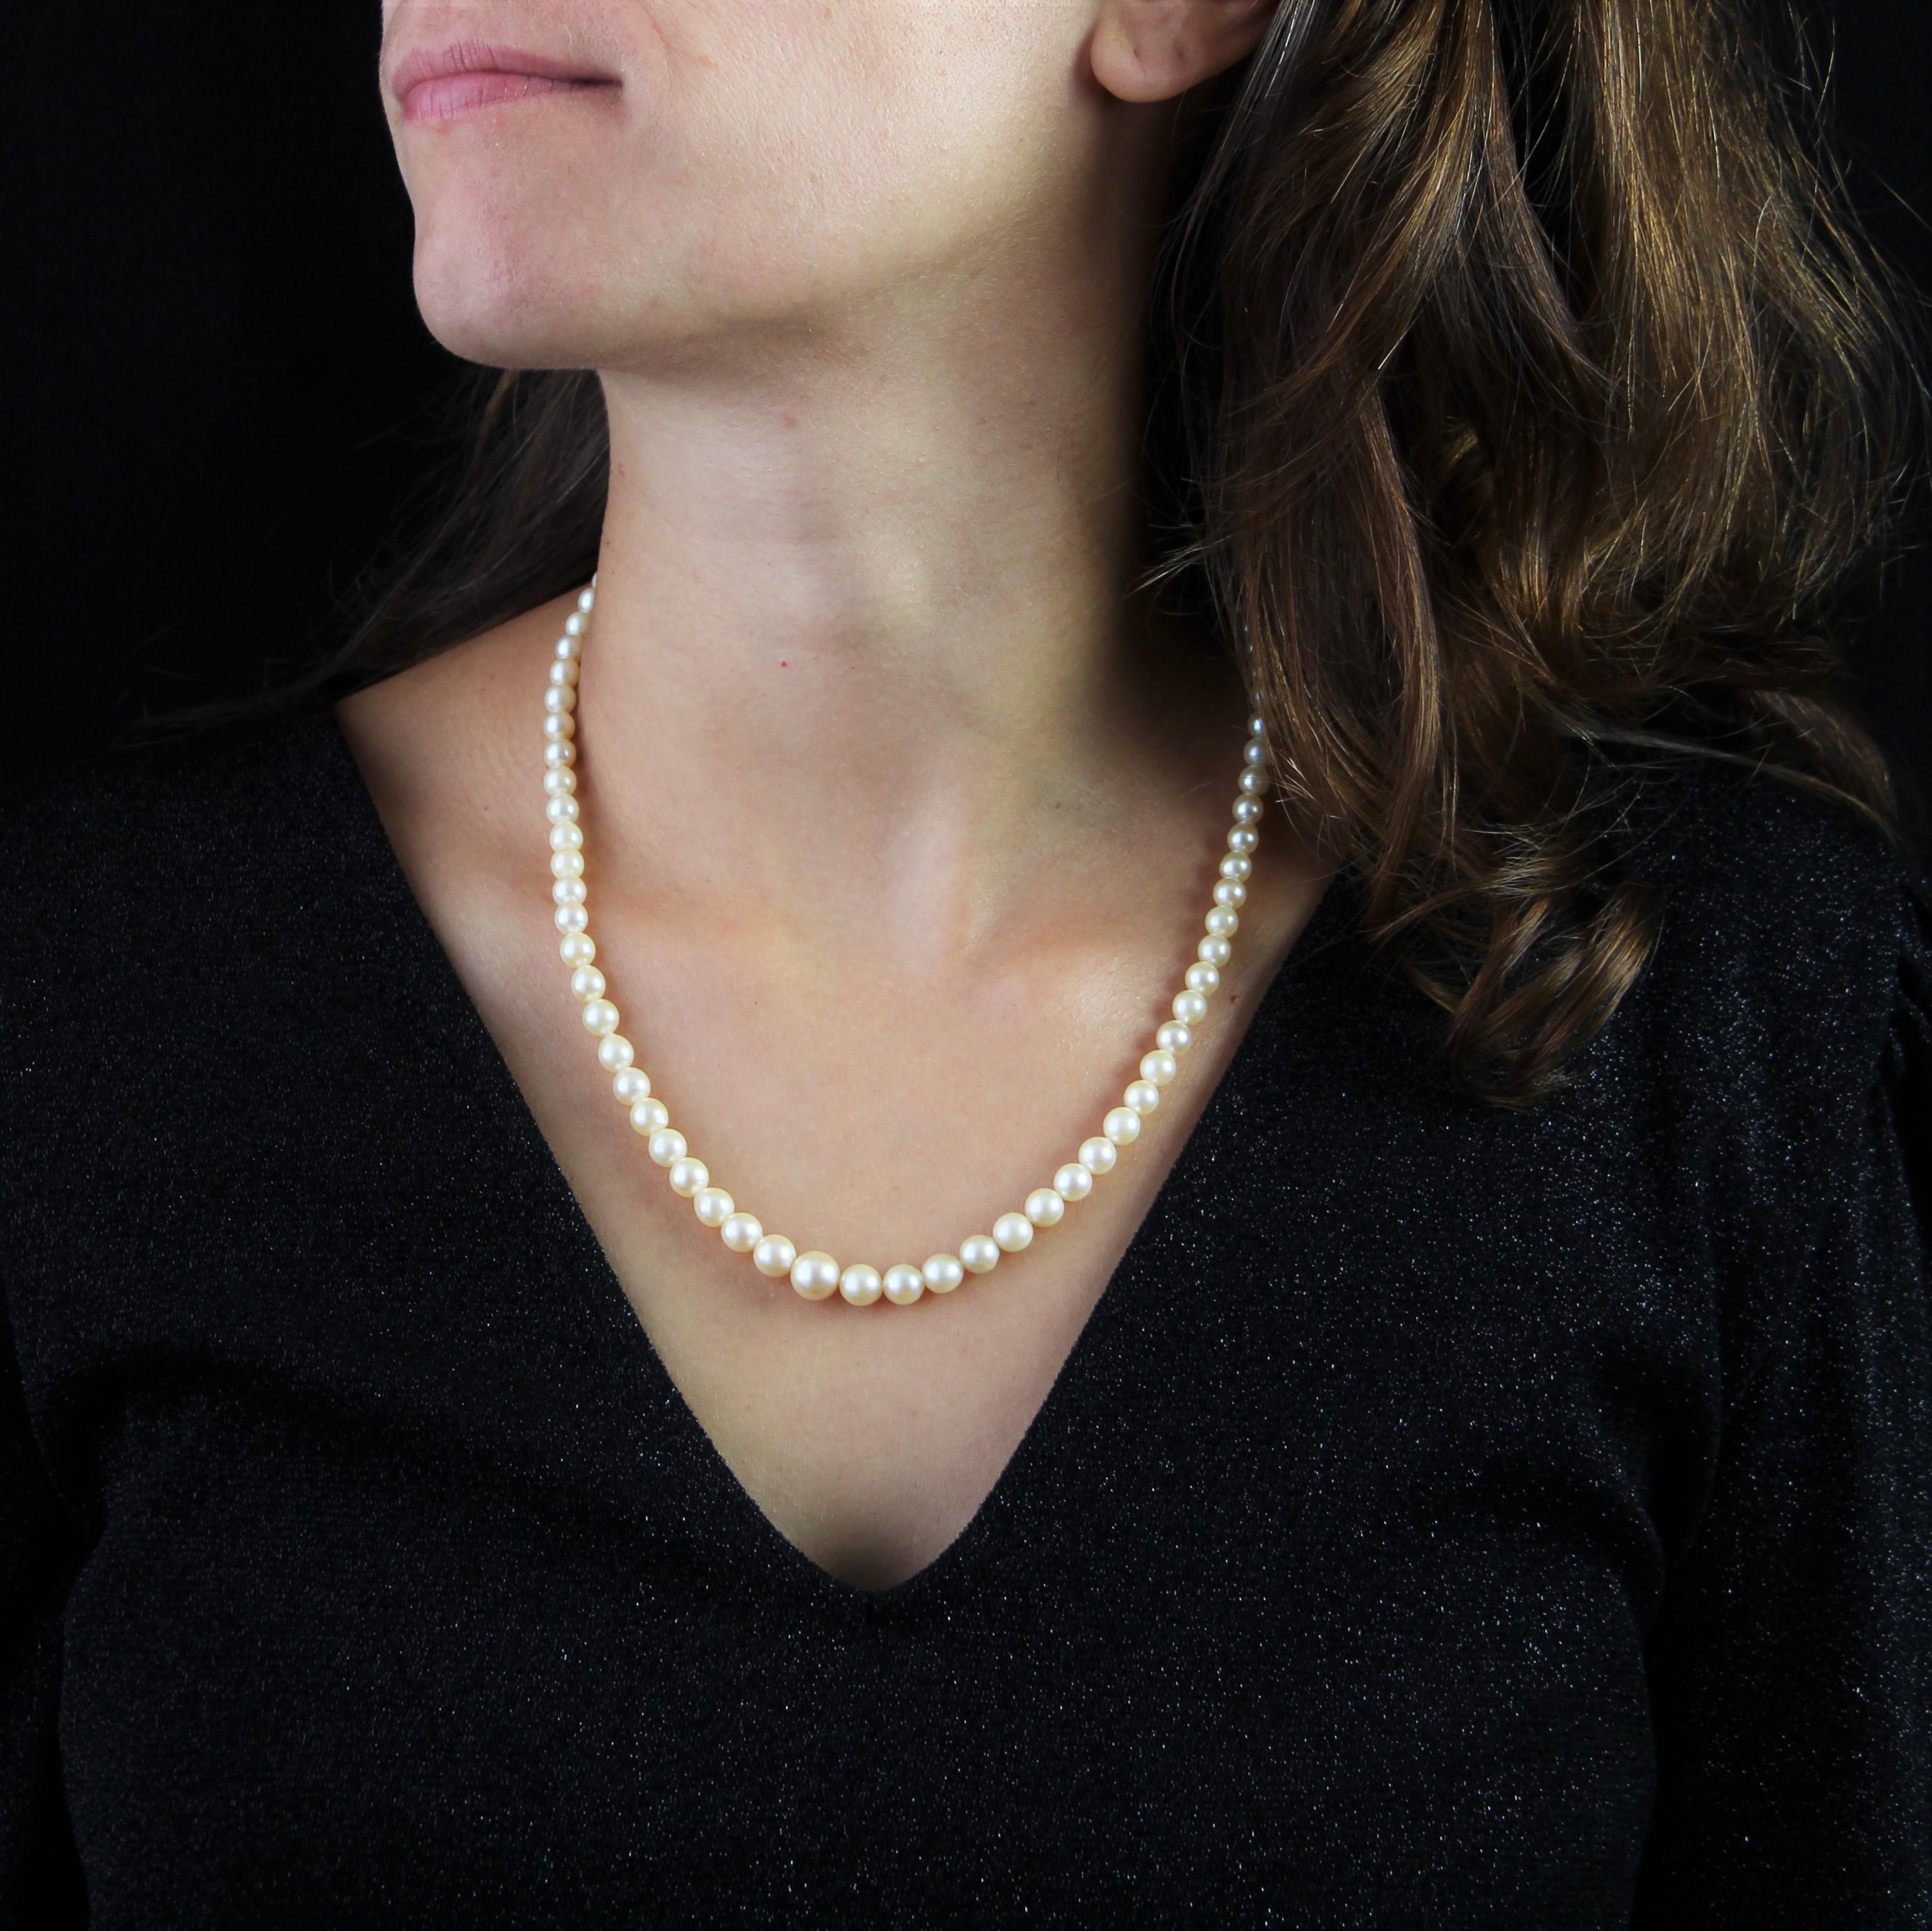 Collier de perles de culture en automne, à l'orient blanc nacré.
Les perles sont retenues par un fermoir en or blanc 18 carats, avec sécurité, et orné sur son sommet de 3 demi-perles de culture.
Diamètre des perles : de 3/3,5 mm à 7,5/8 mm.
Longueur